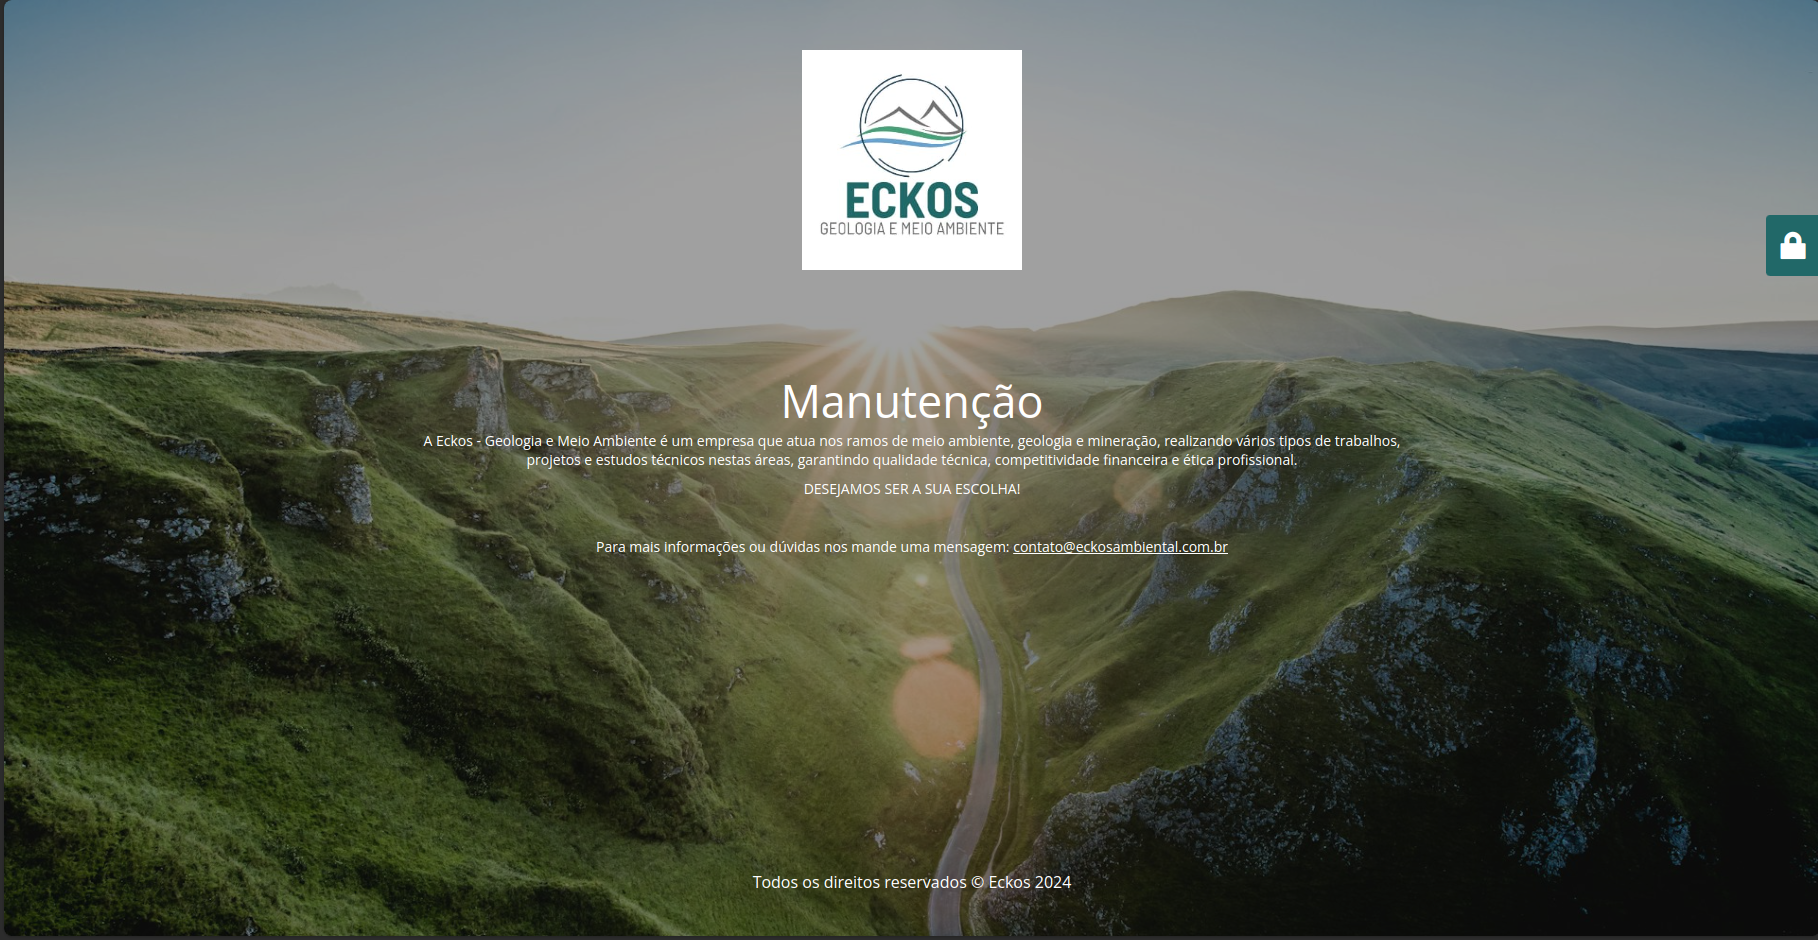 Eckos - Geologia e Meio Ambiente